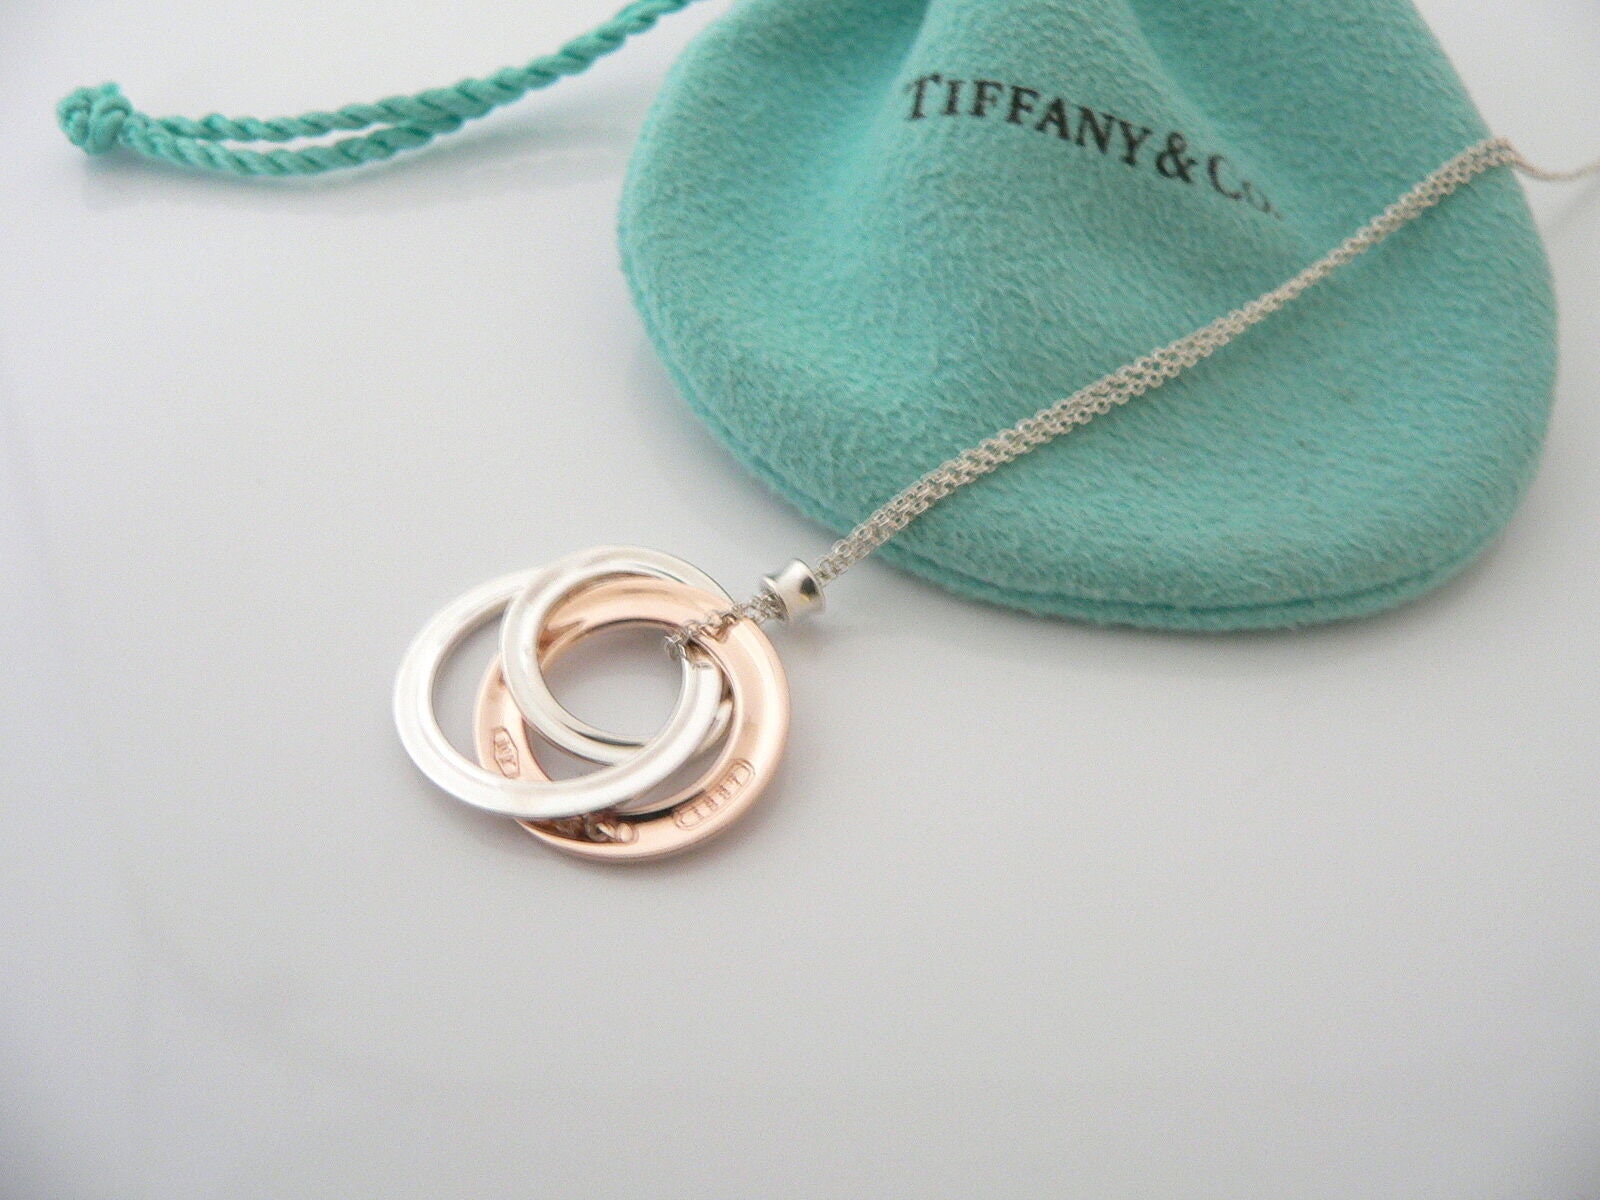 Near MINT TIFFANY&Co 1837 Interlocking Circles Necklace Silver 925 No Box |  eBay